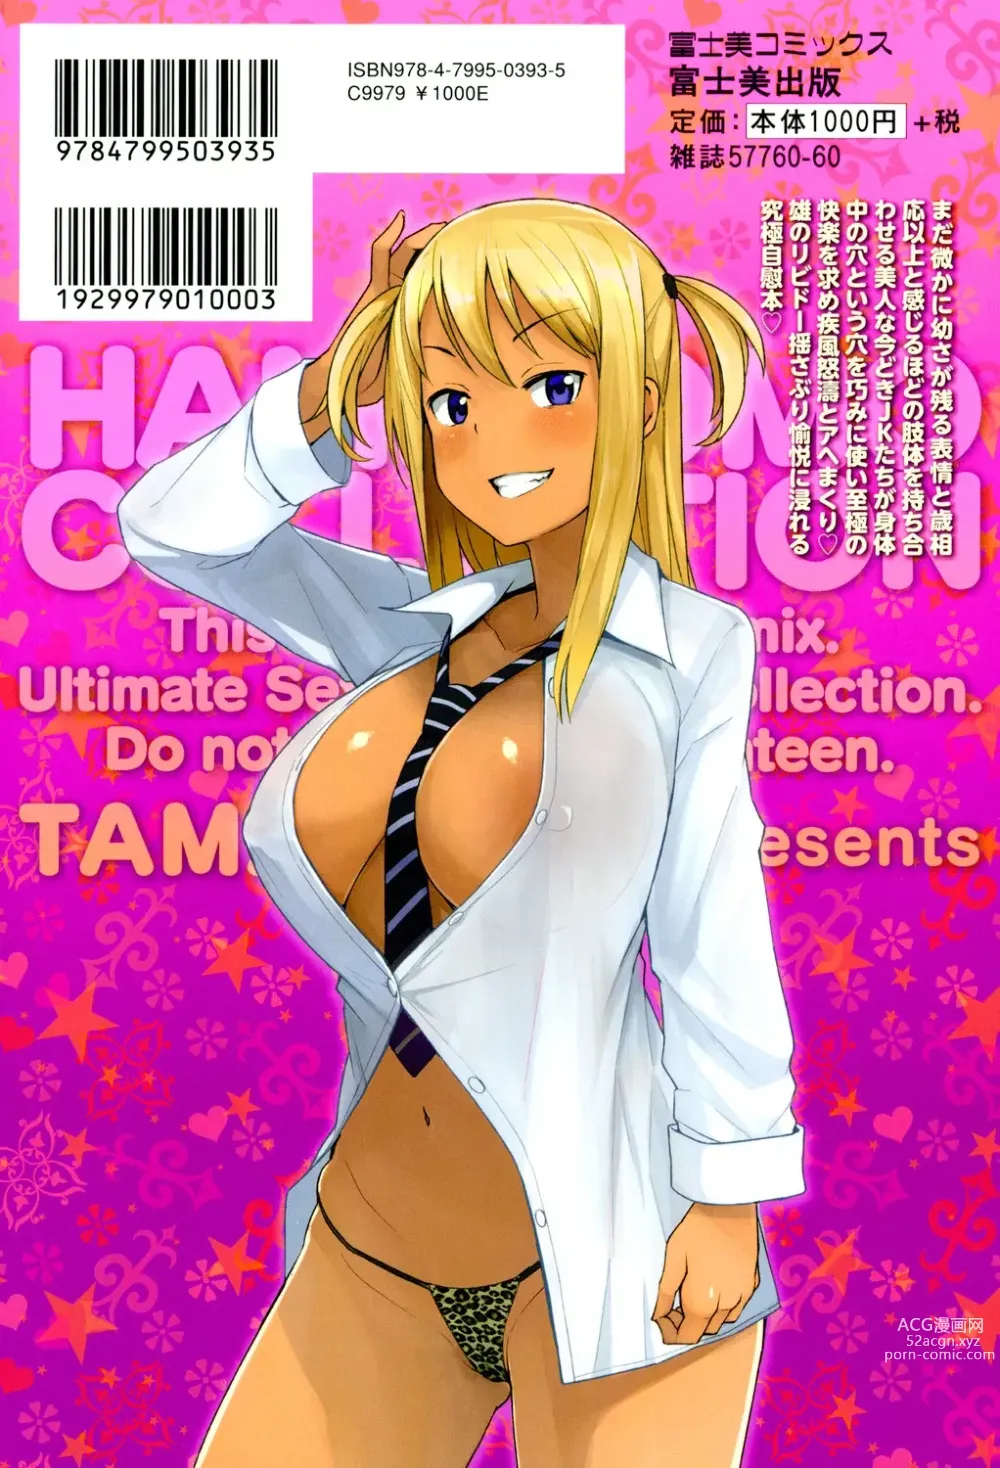 Page 212 of manga Hametomo Collection